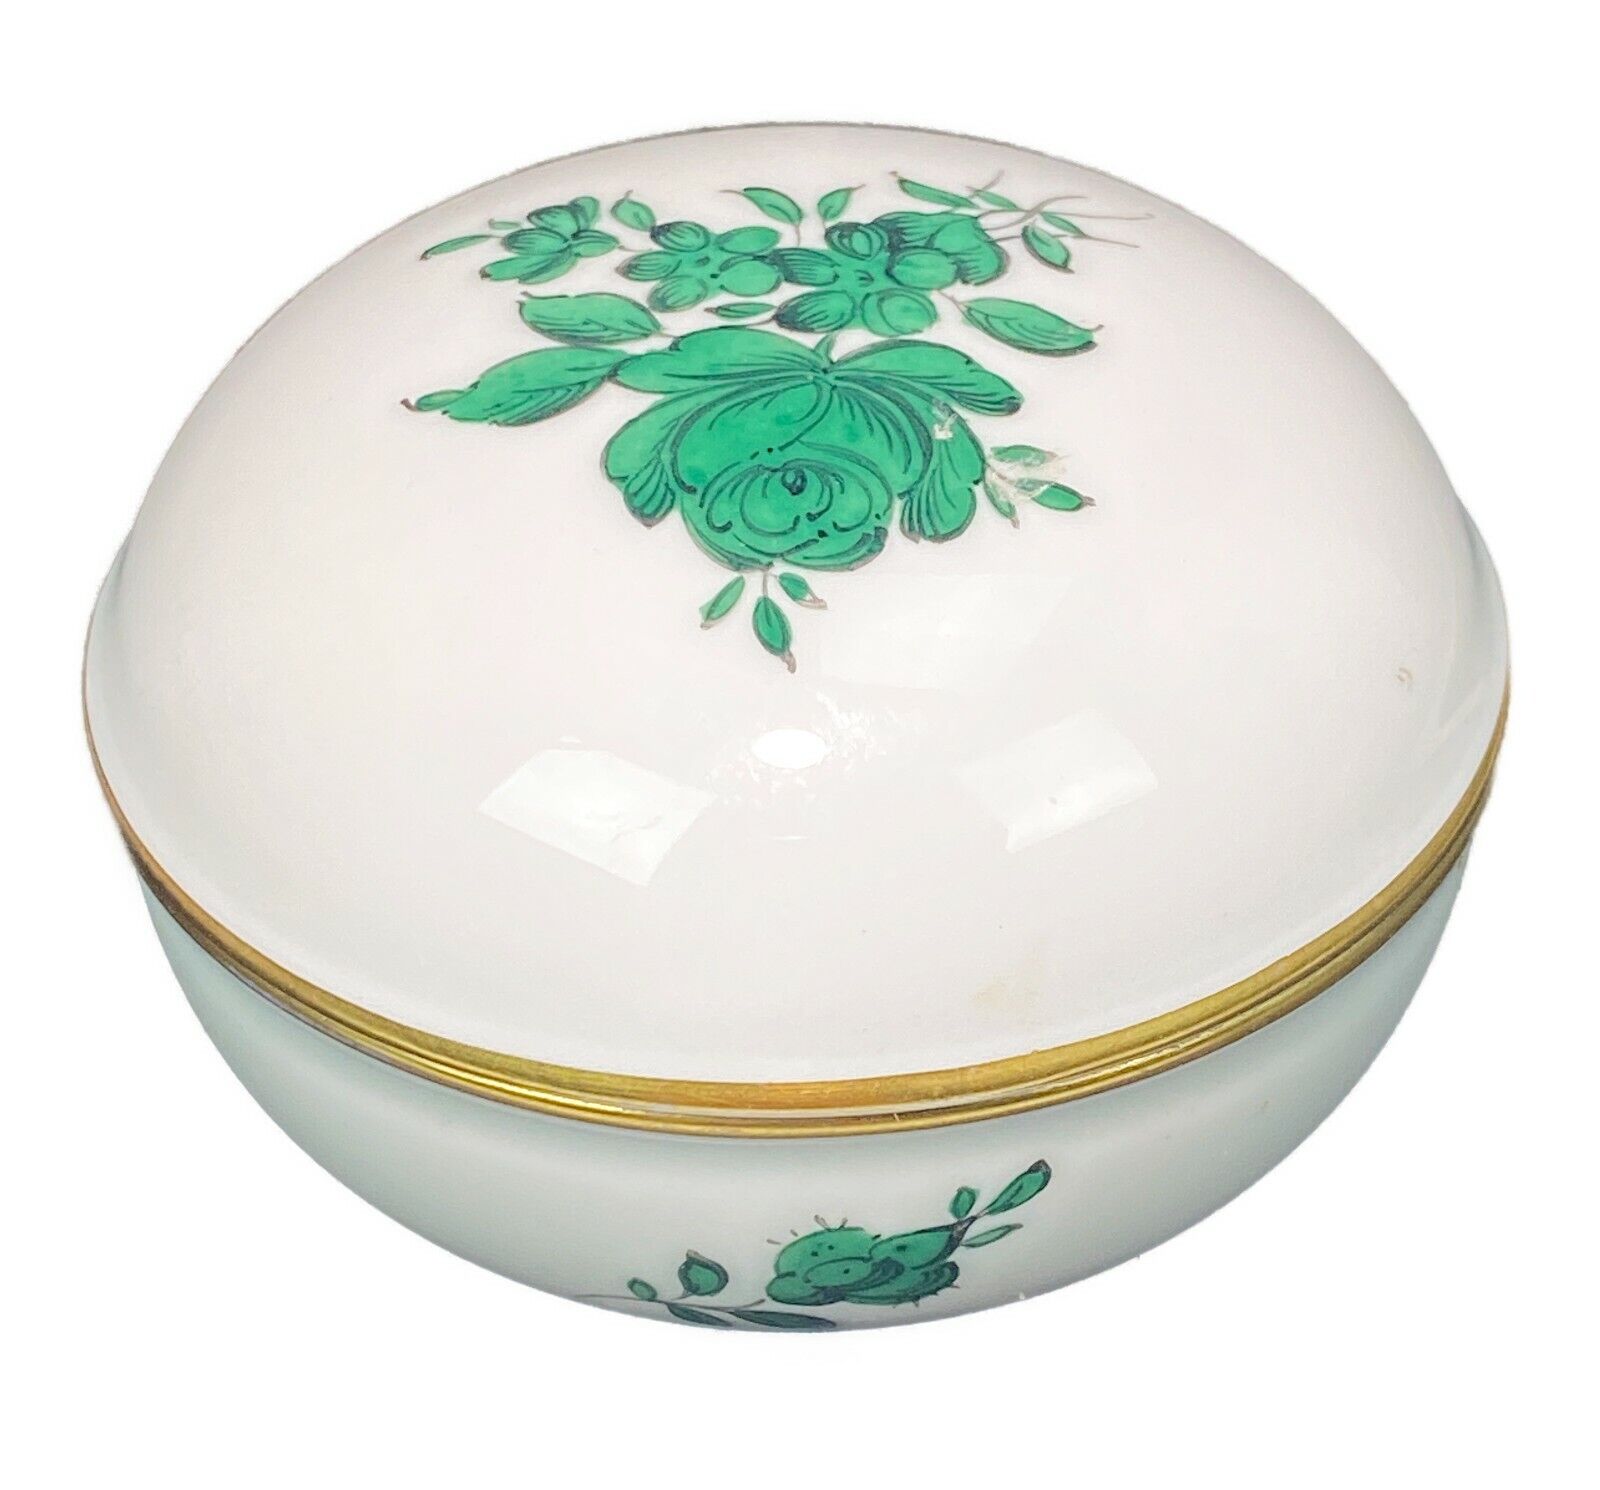 Wien Augarten Porcelain Wien Austria Trinket Dish Green Rose Flowers 2.75” x H2”